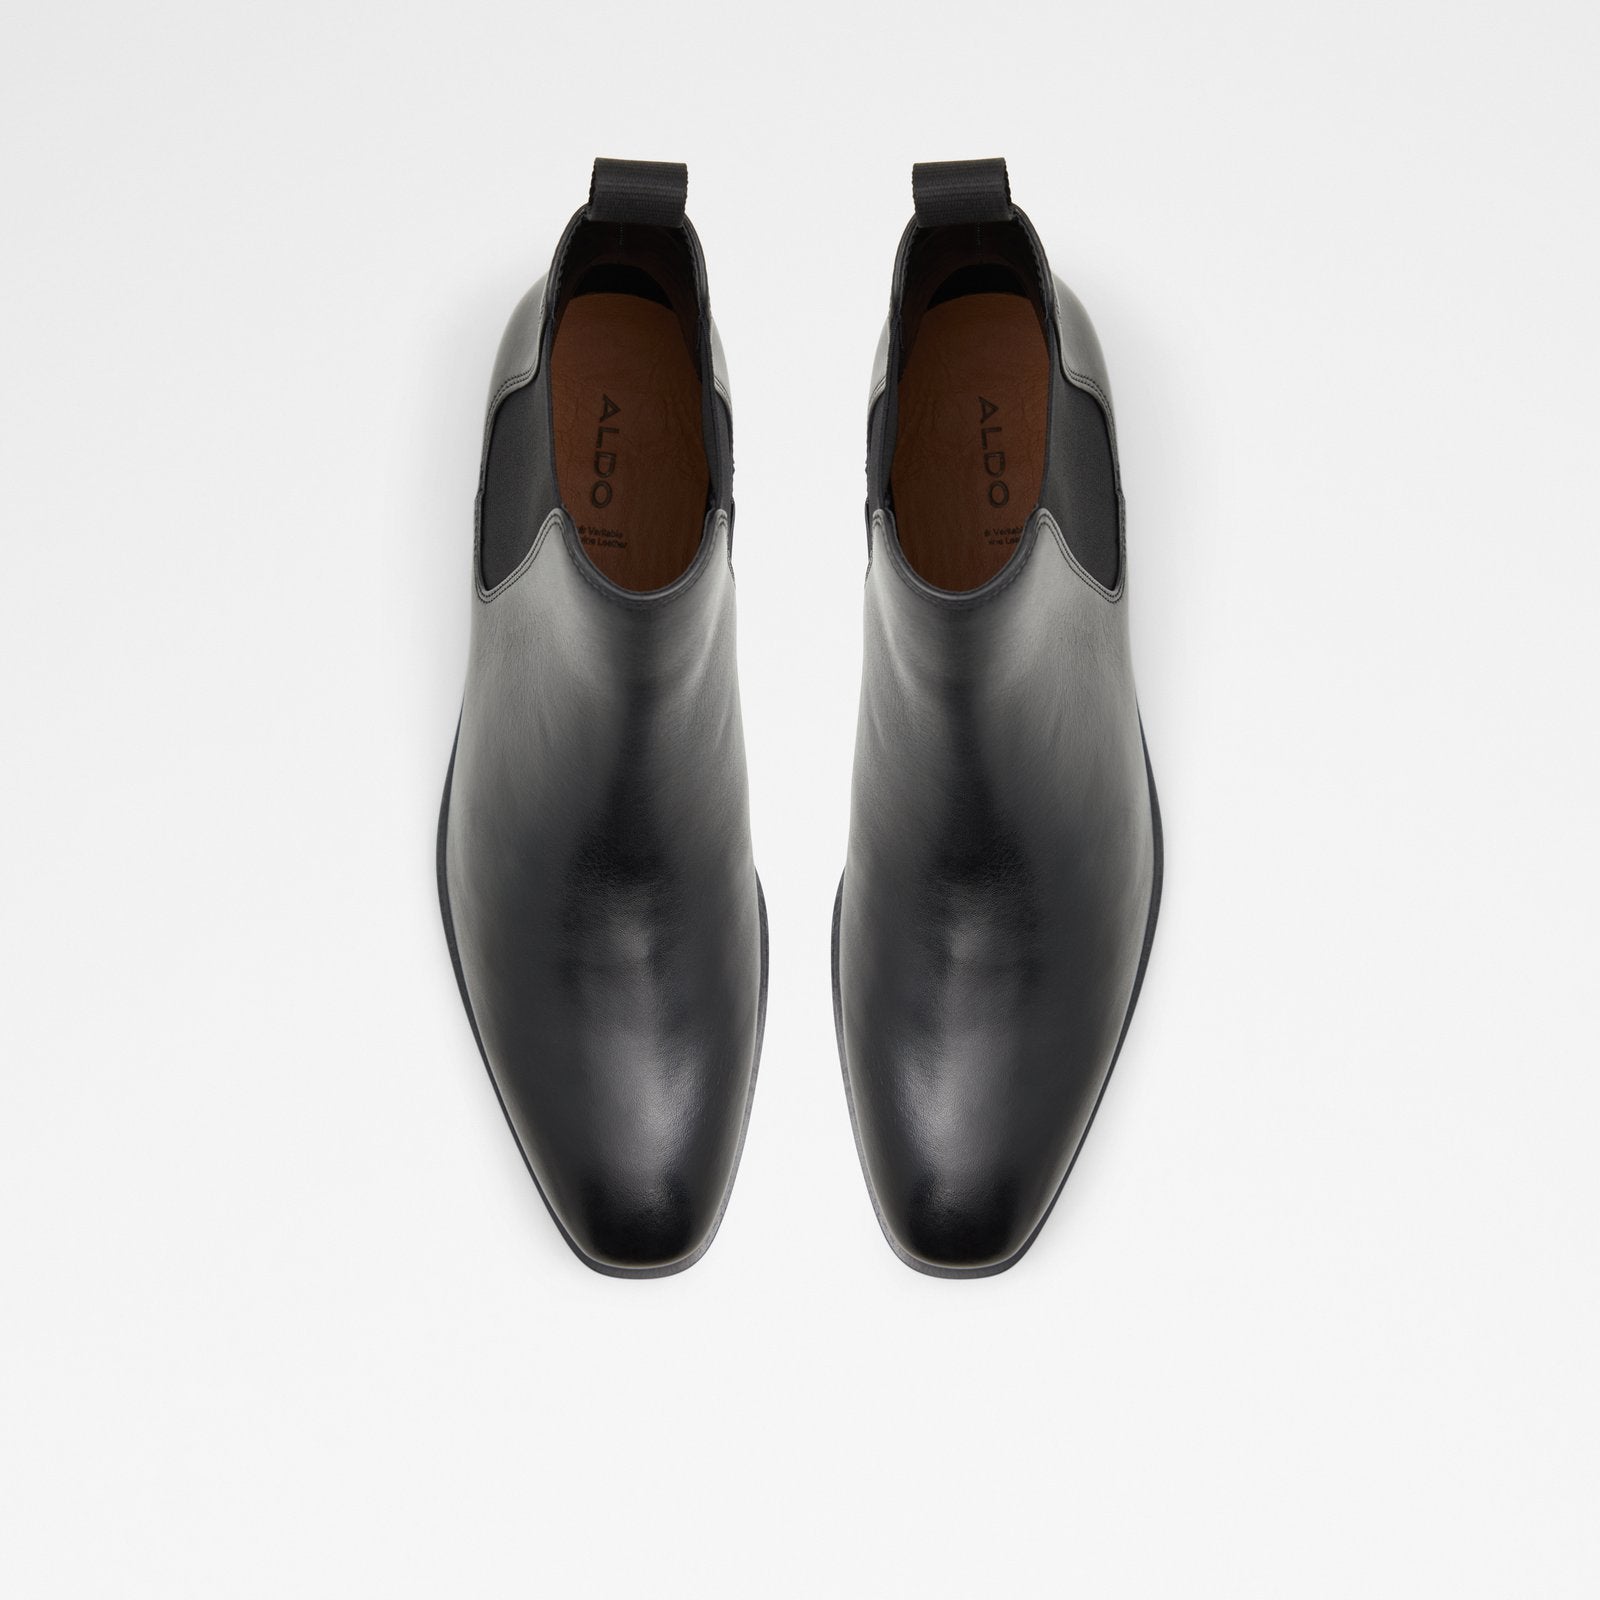 Linguam Men Shoes - Black - ALDO KSA